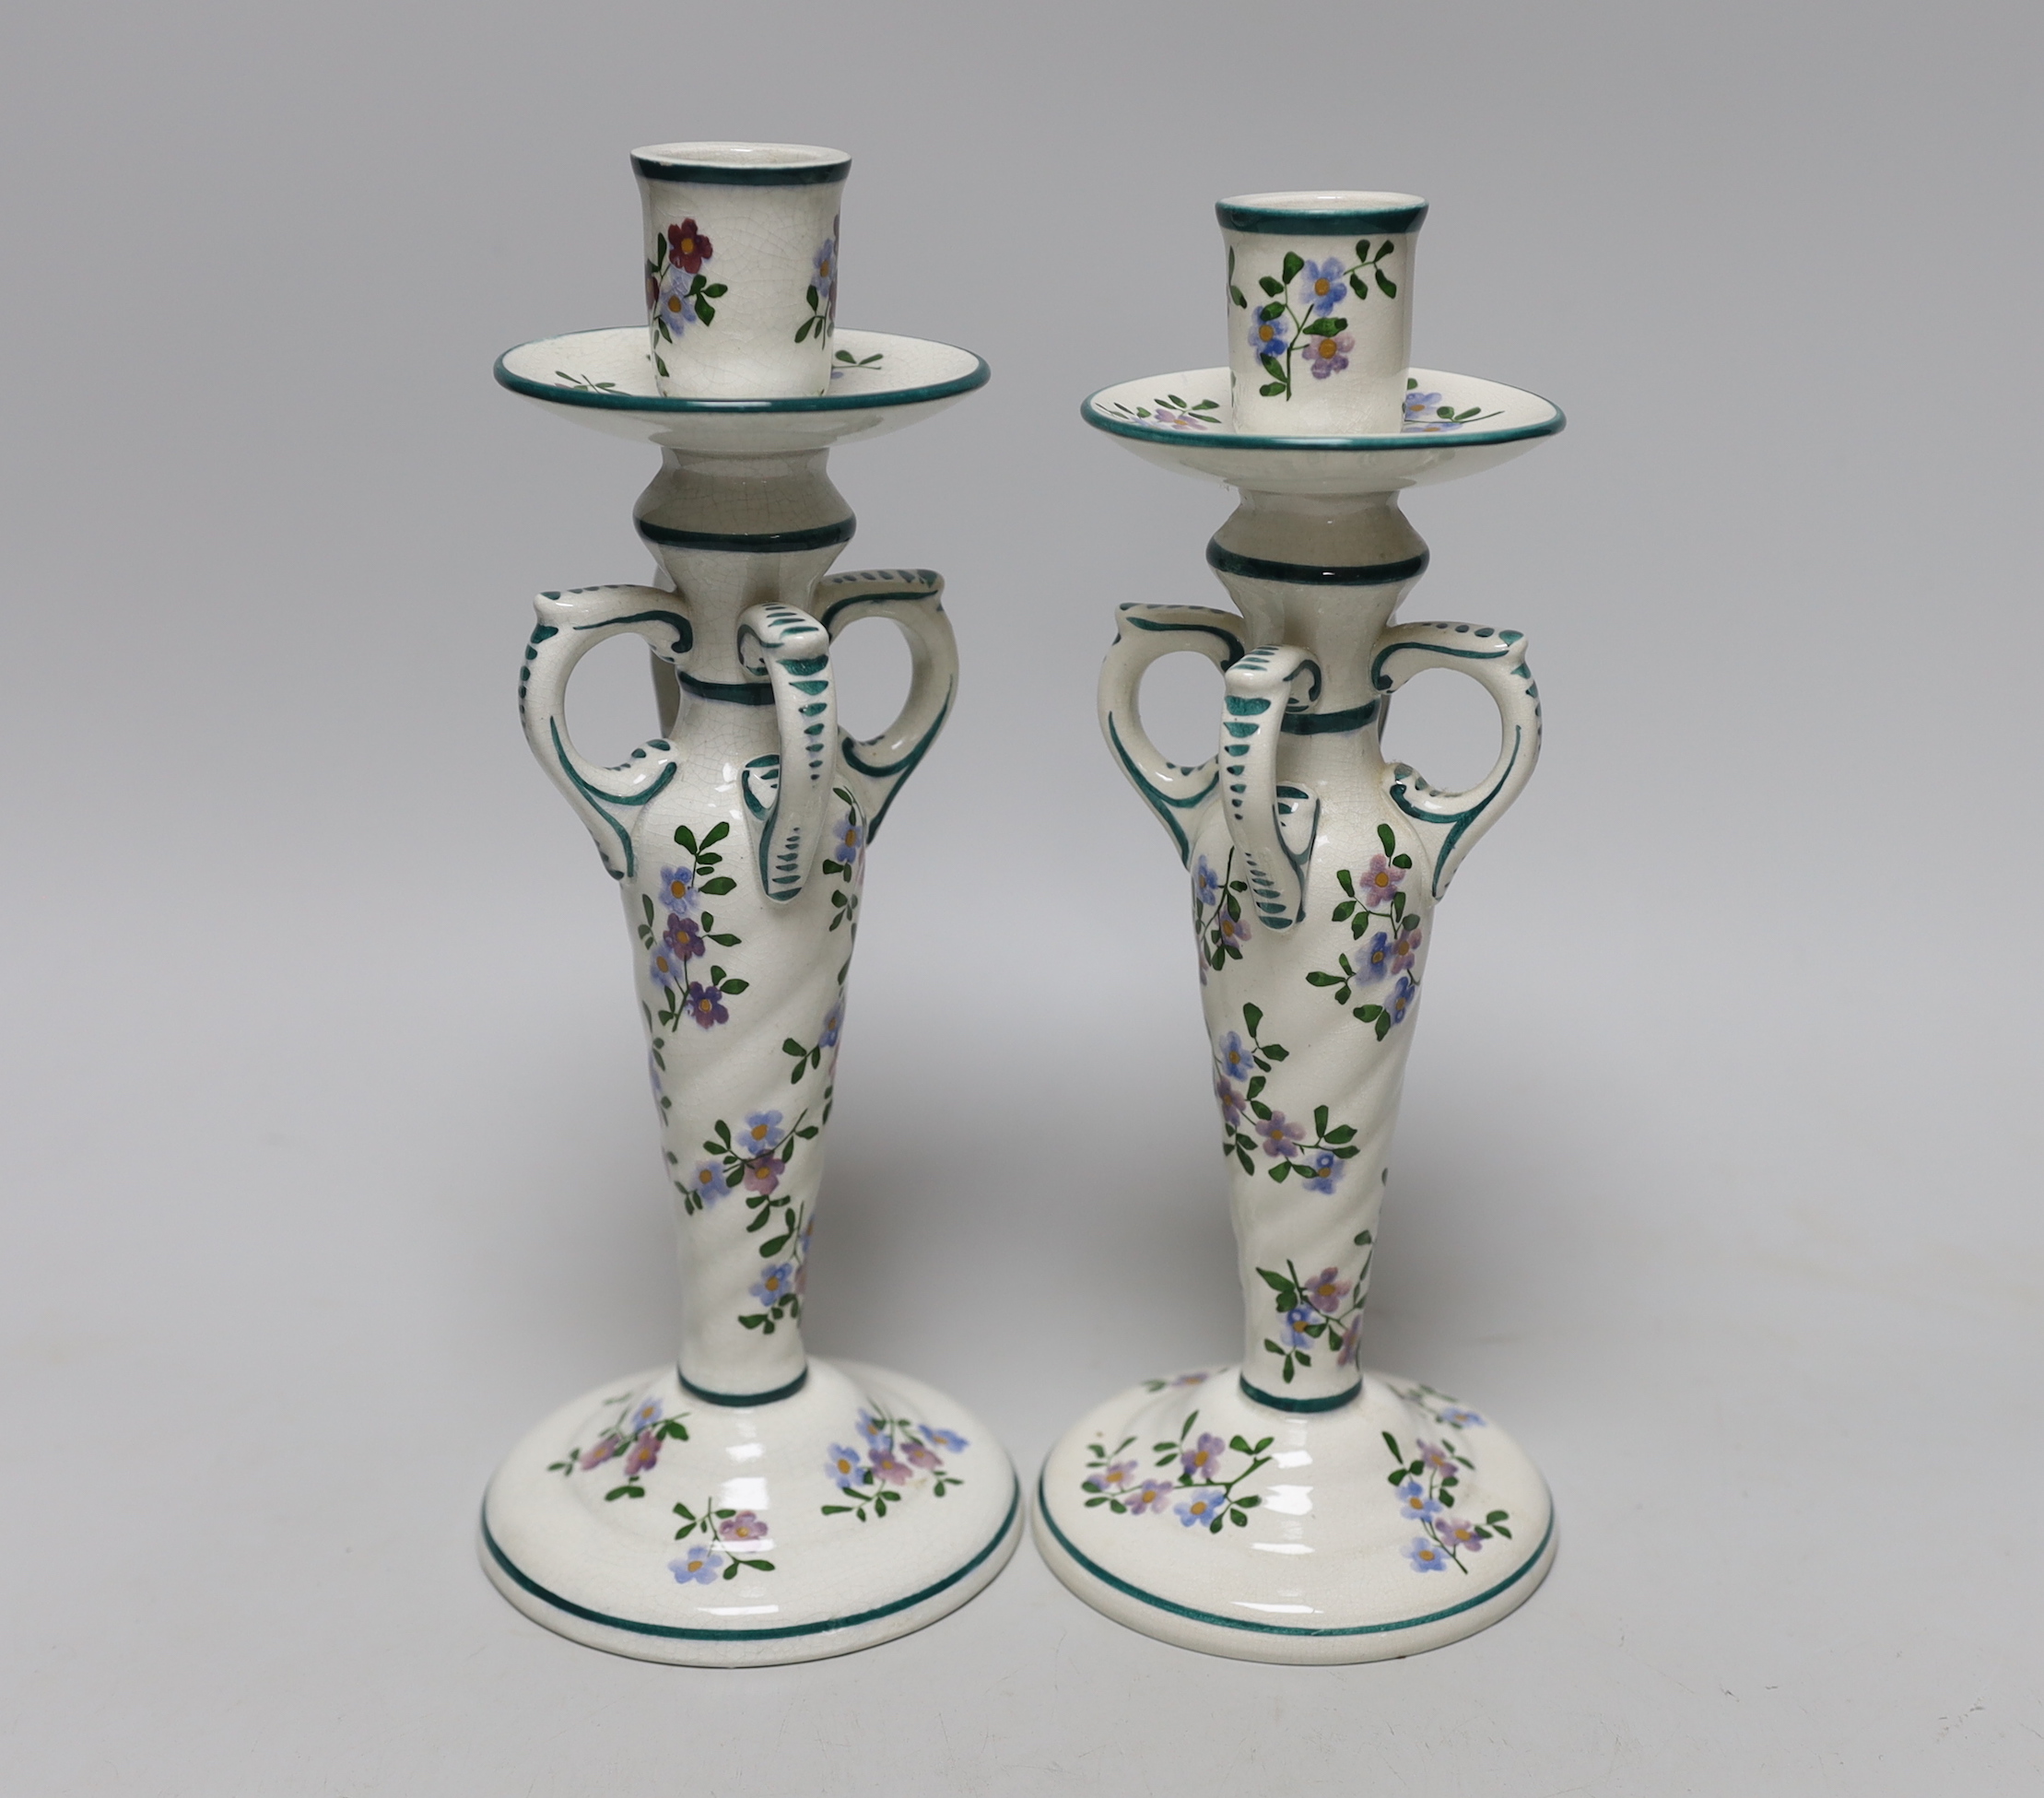 A pair of Wemyss ‘Kintore’ candlesticks, 24cm